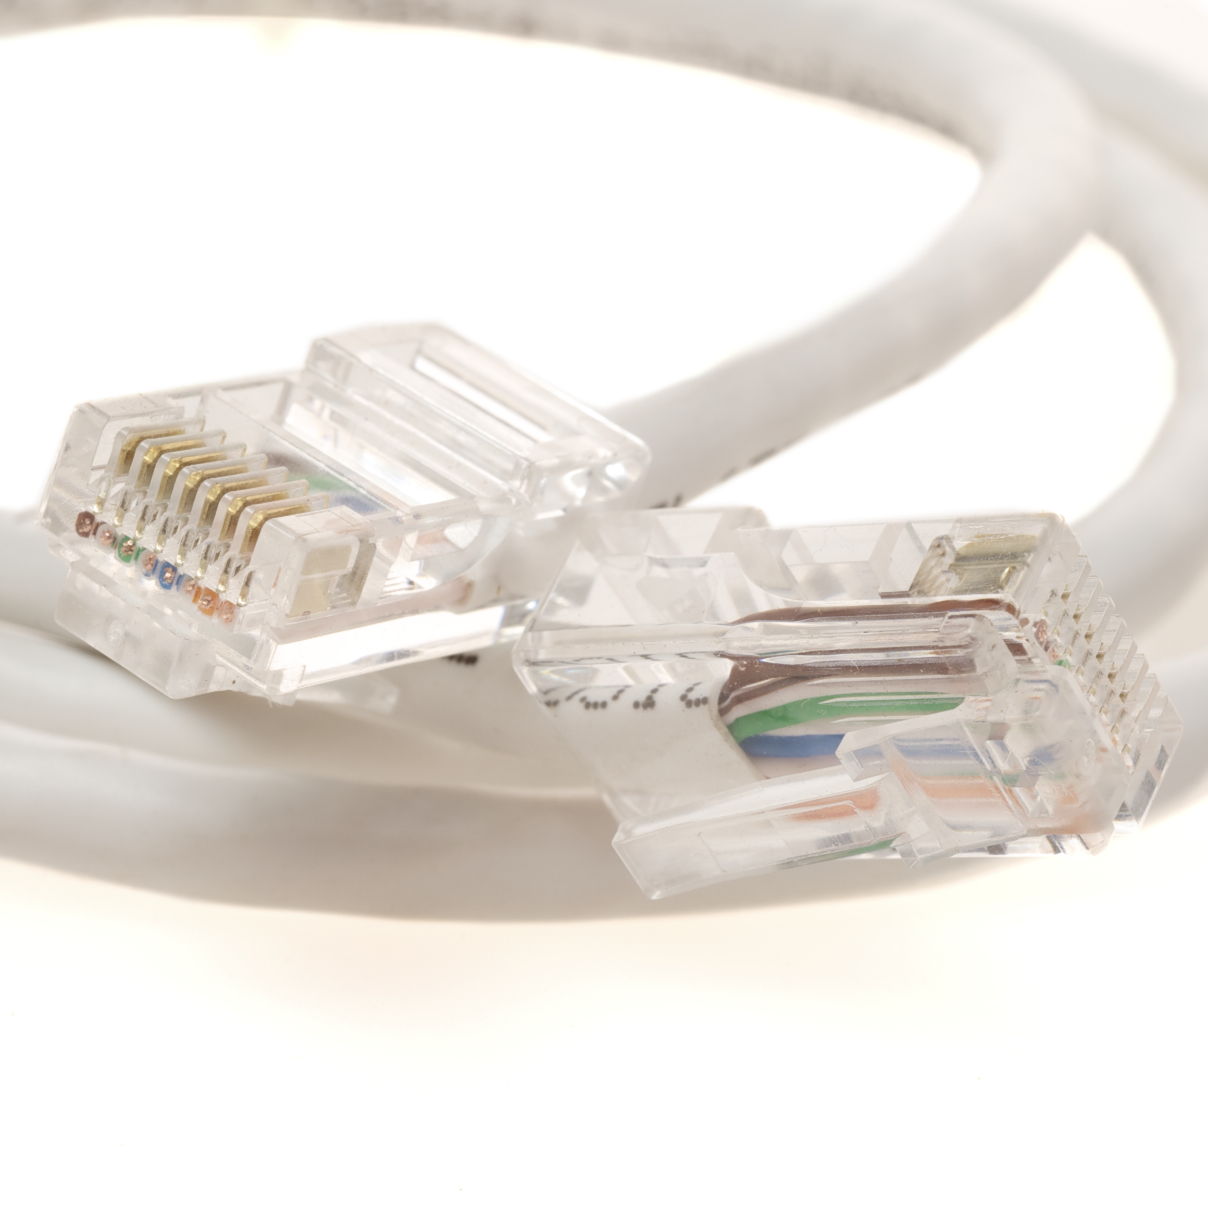 14' White Cat5e 350MHz RJ45 Network Patch Cable | Cables.com